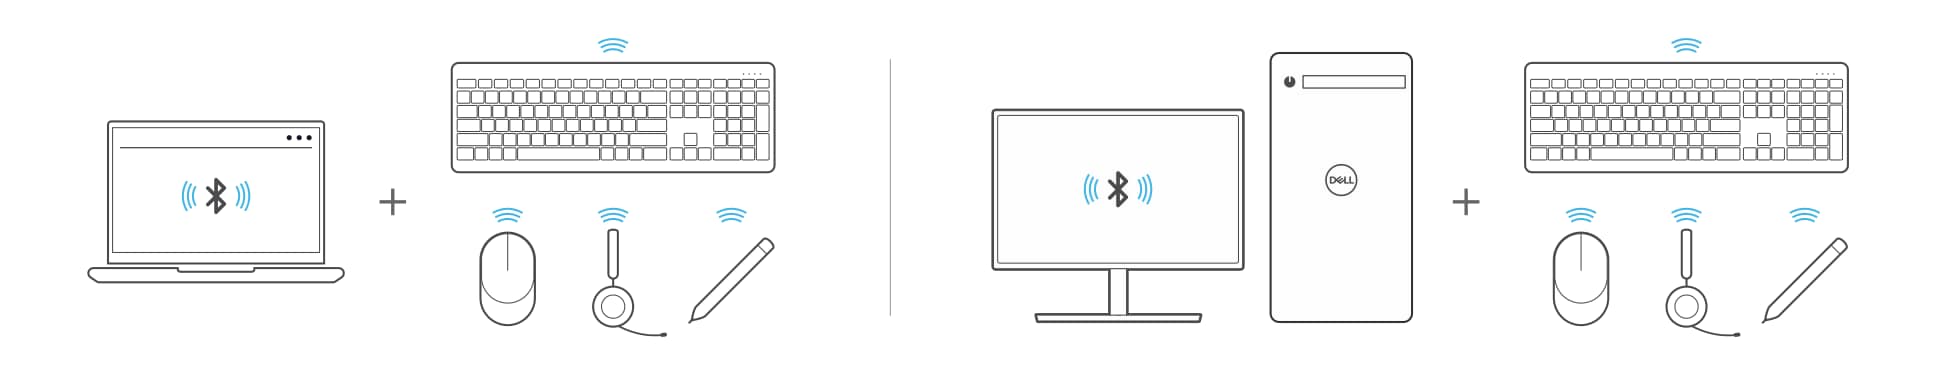 Laptops en desktops koppelen aan Bluetooth-apparaten zoals toetsenbord, muis, headset of een pen